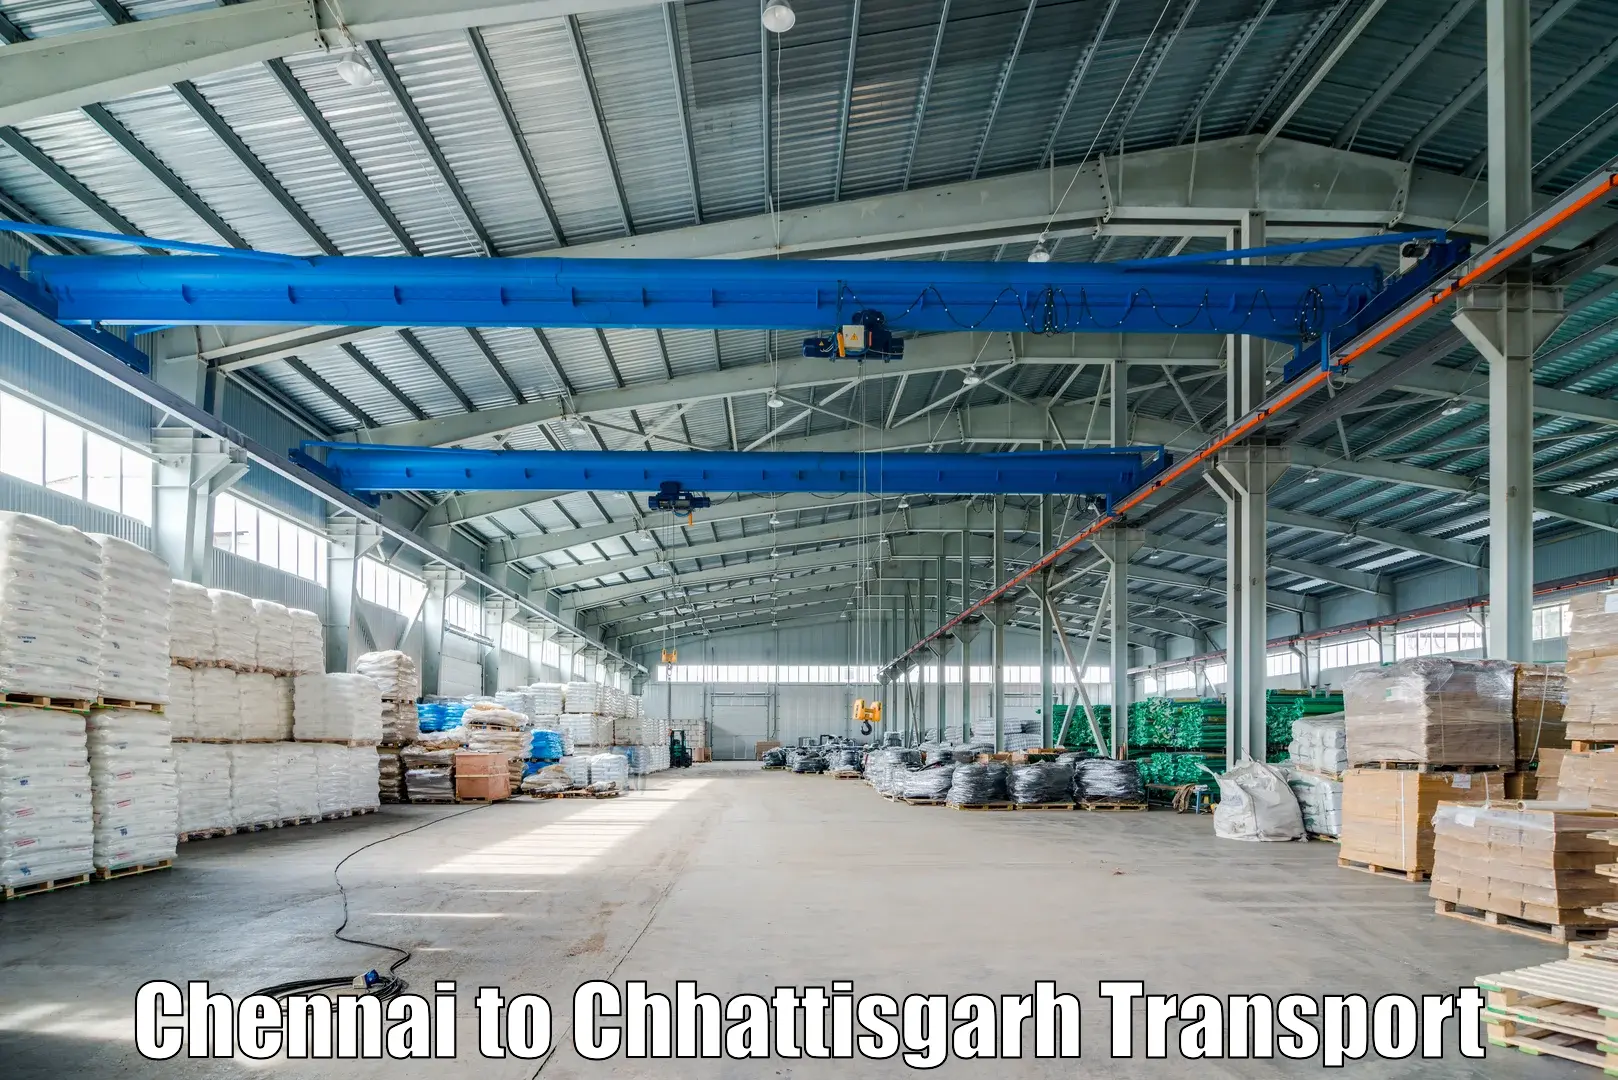 Transport in sharing in Chennai to Raigarh Chhattisgarh